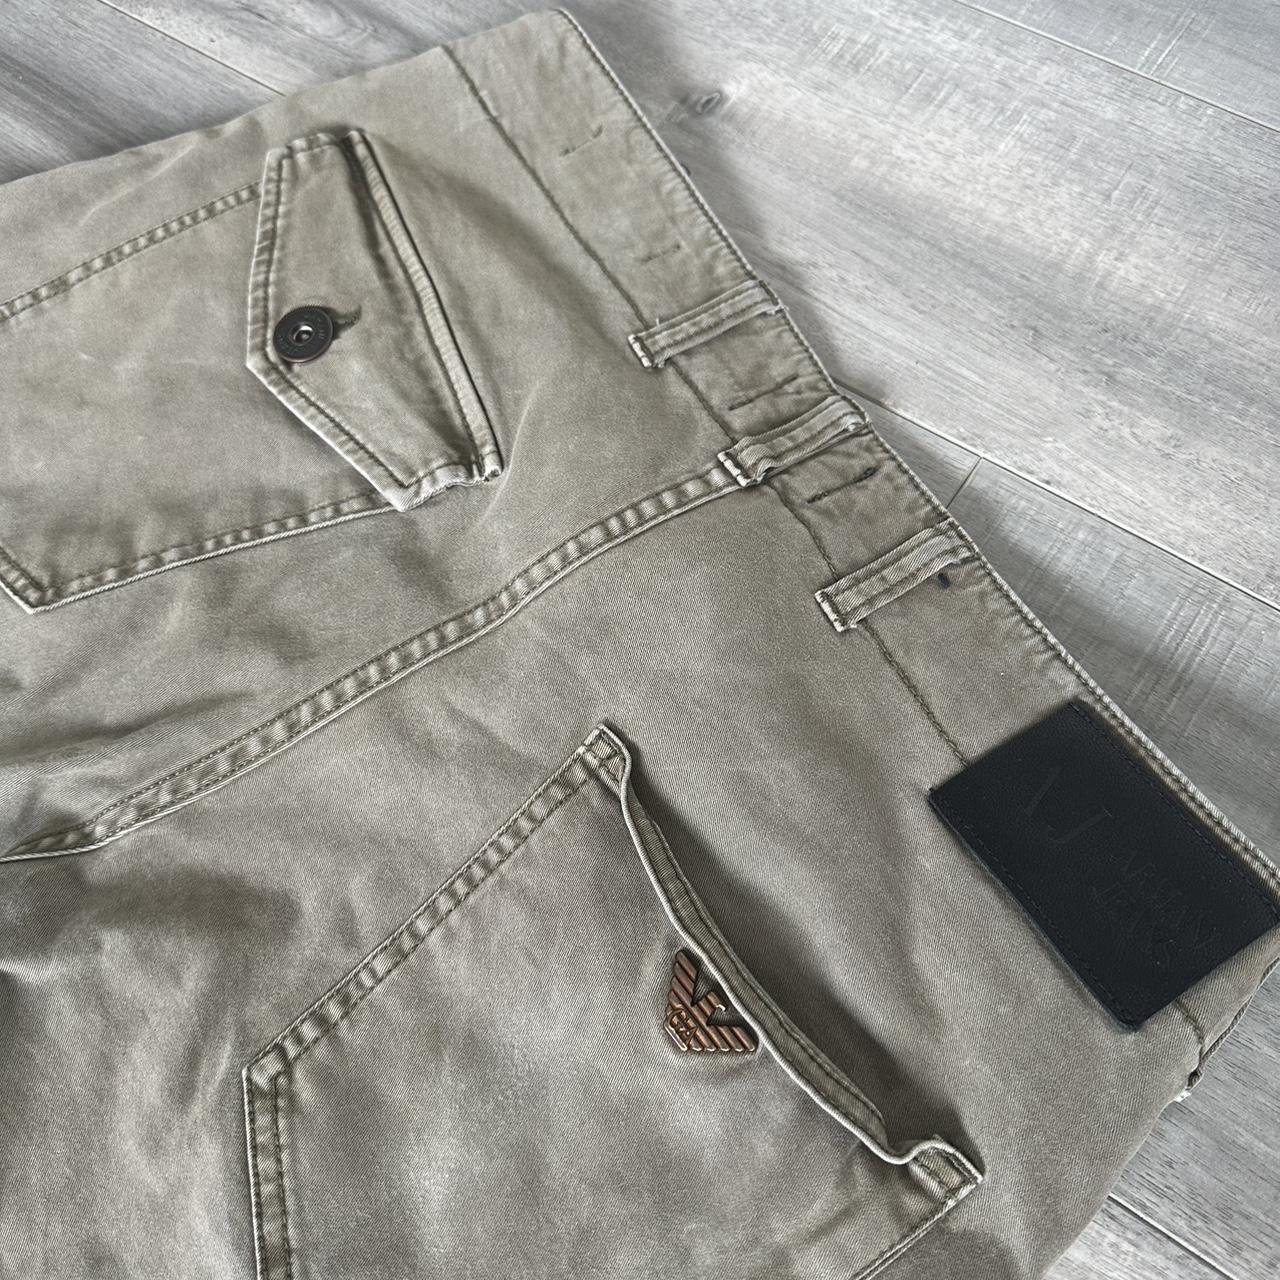 Armani Jeans Men's Khaki and Tan Trousers (4)